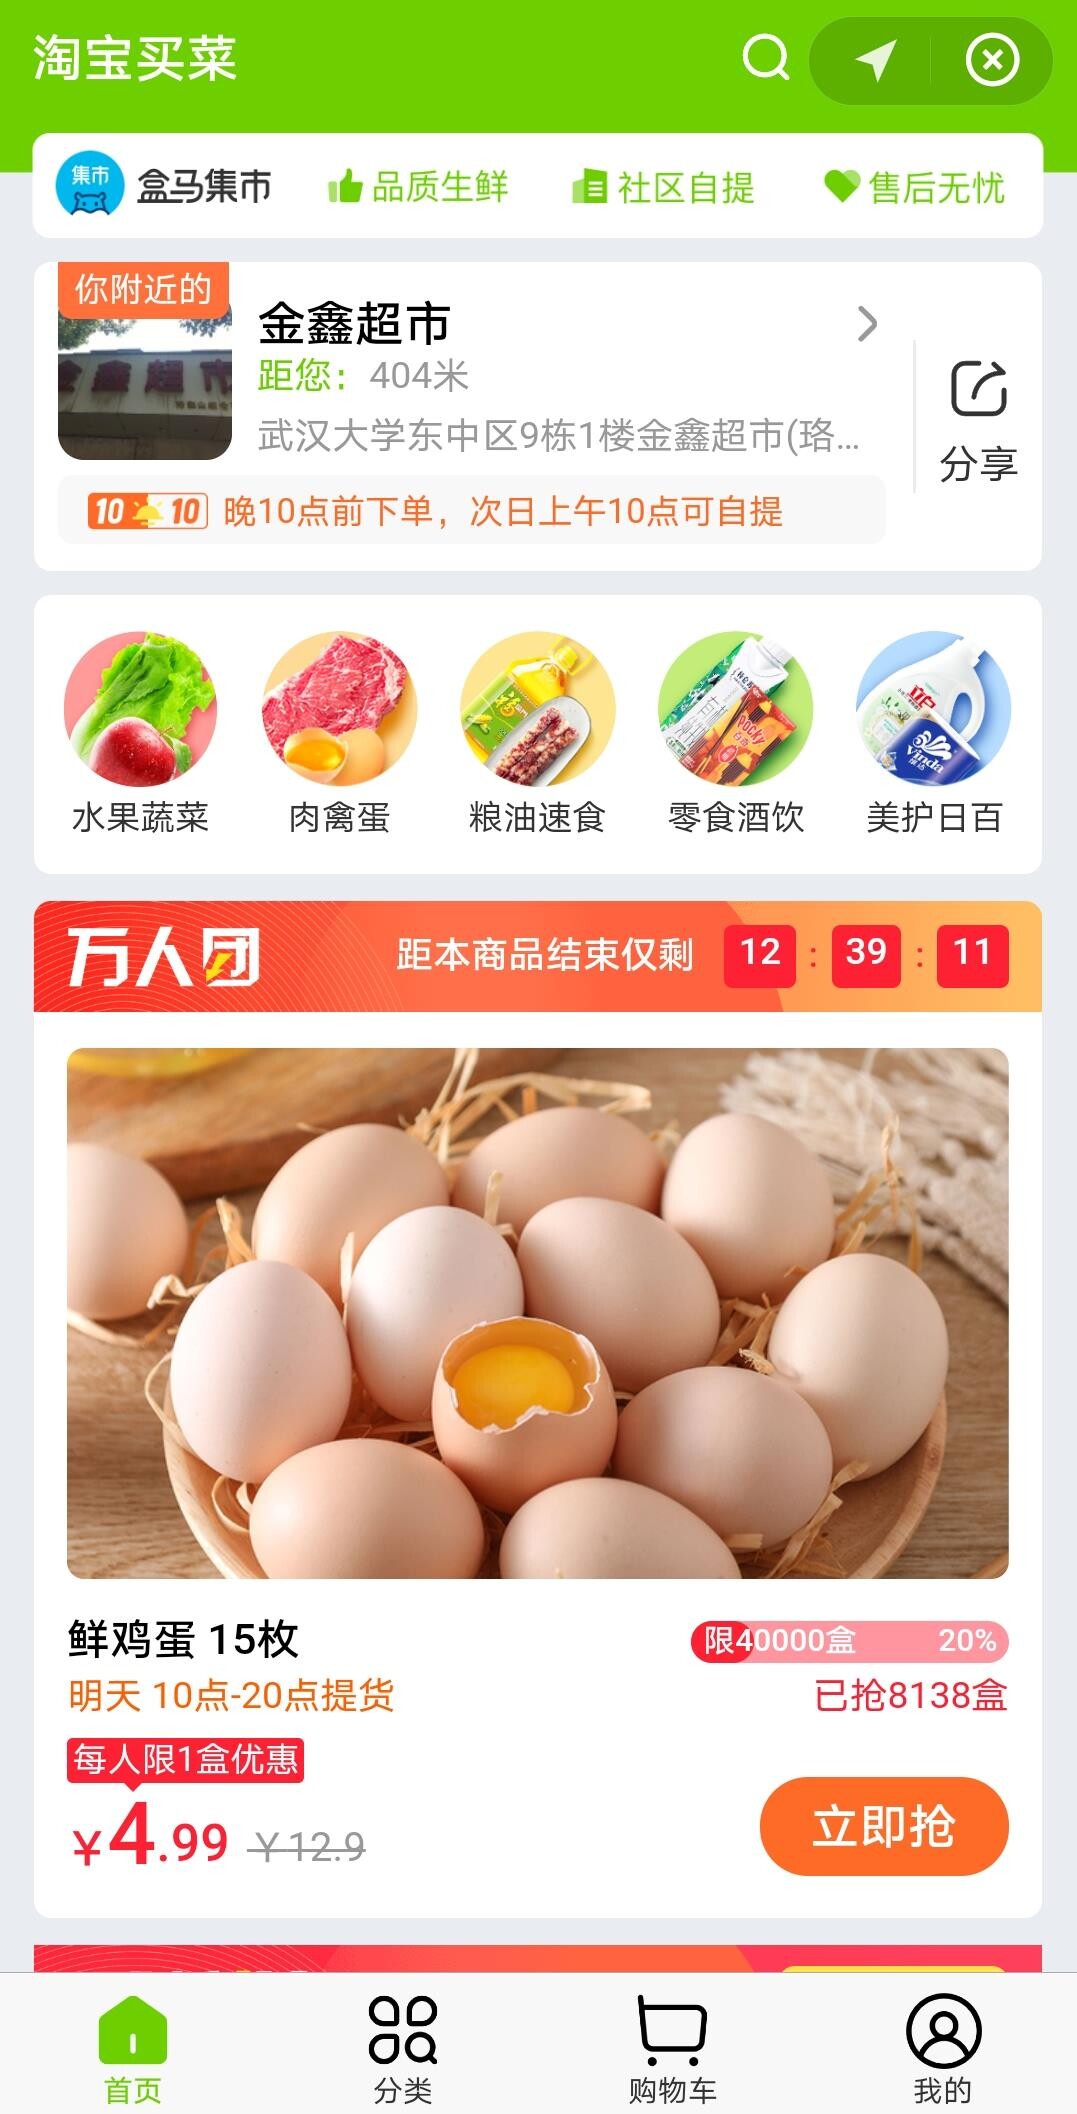 阿里入局社区团购 已在武汉等地上线“淘宝买菜”